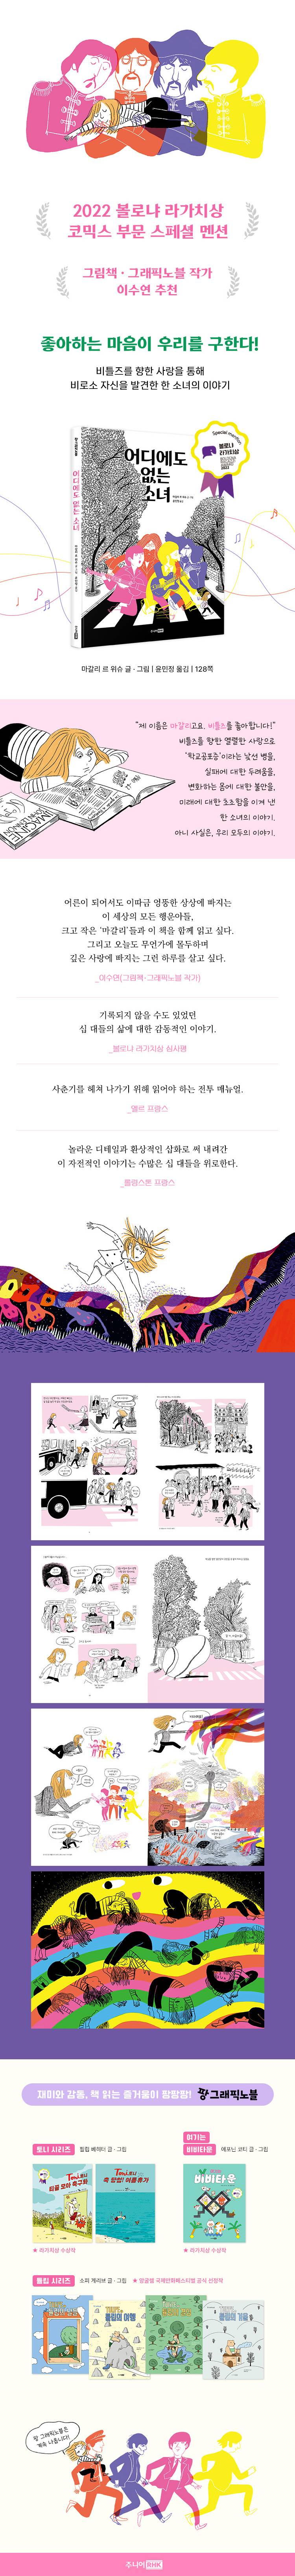 도서 '어디에도 없는 소녀' 증정 이벤트 | 인스티즈